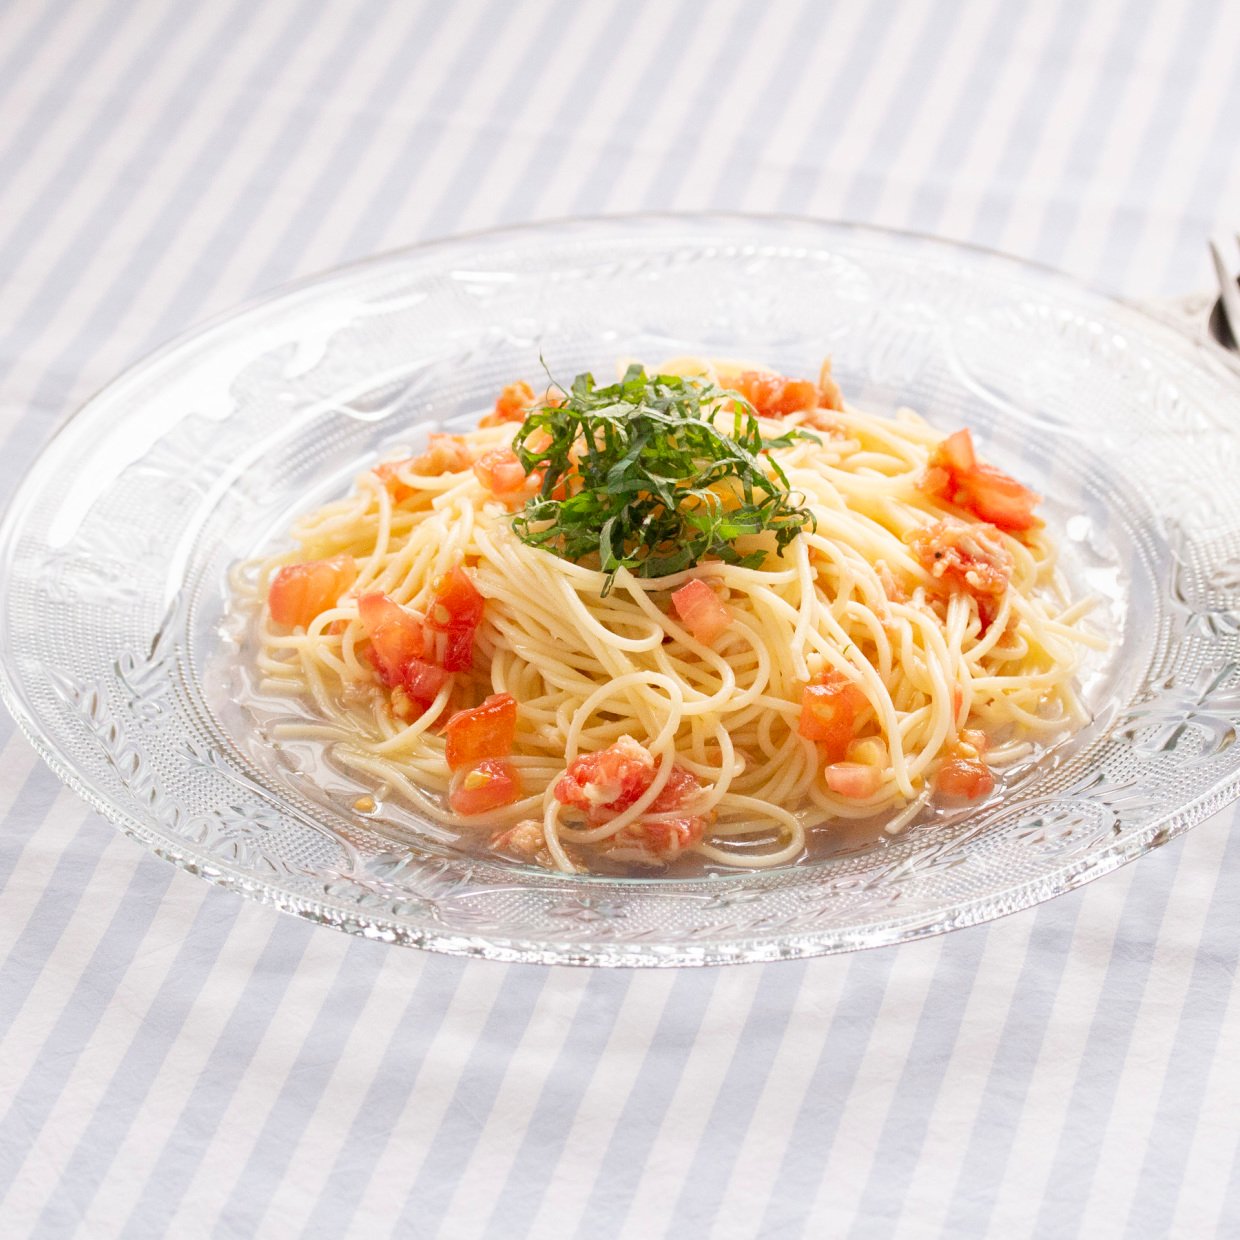  「トマト」と「レモン果汁」を冷凍して麺に絡めるだけ。夏バテを防ぐ「冷たいトマトのカッペリーニ」 